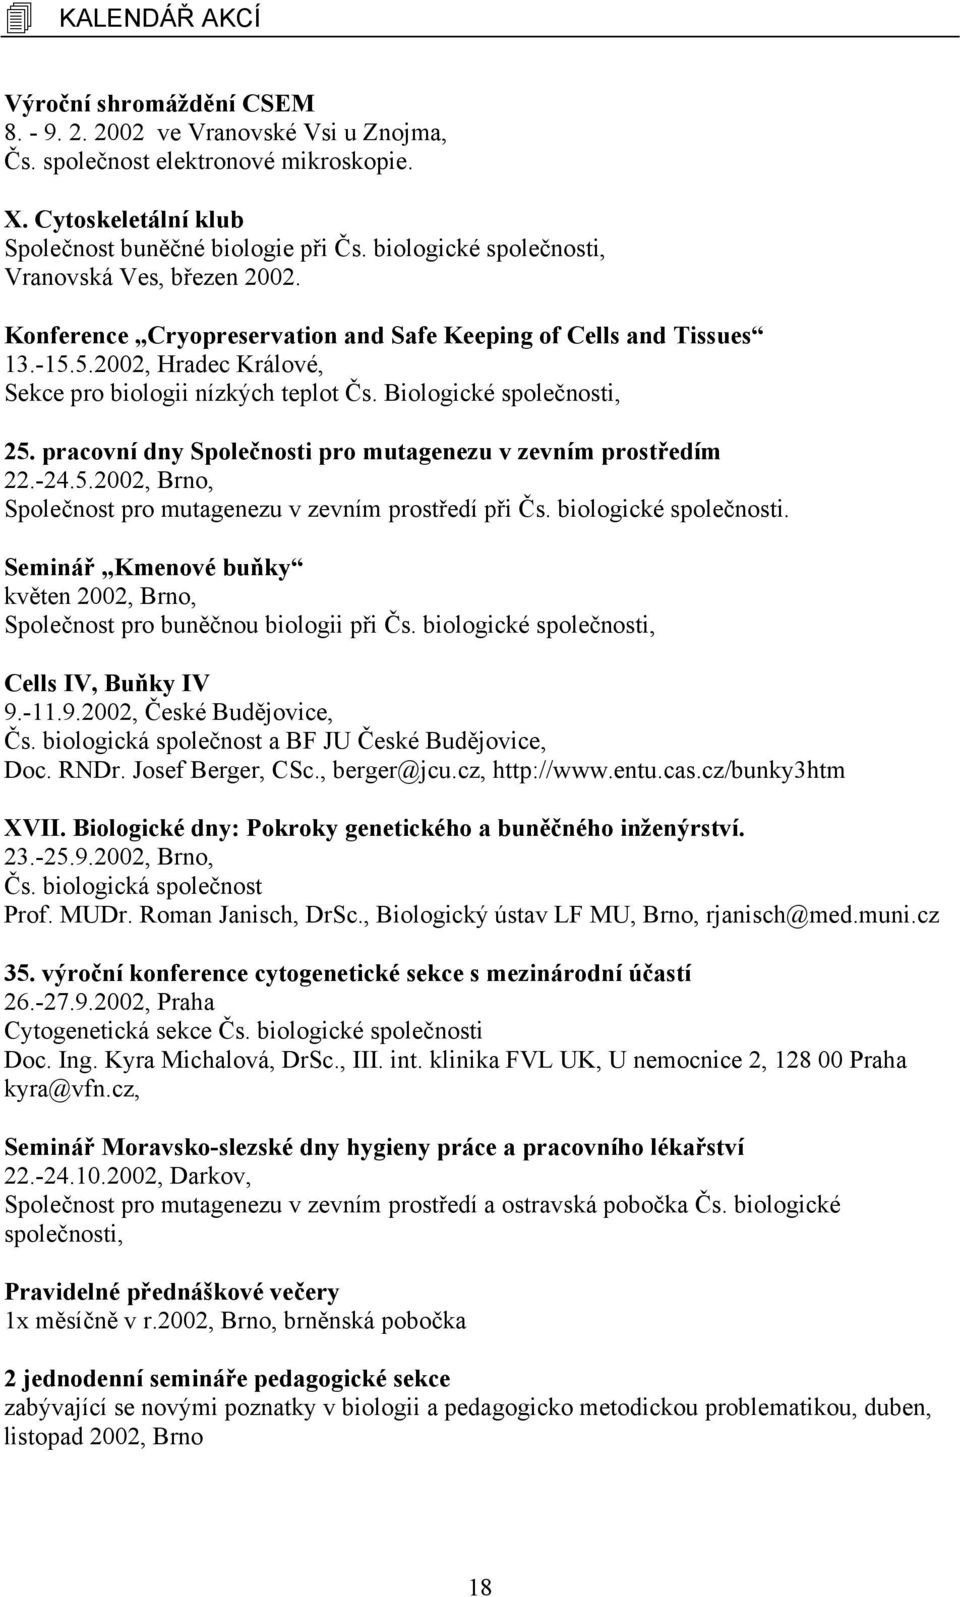 Biologické společnosti, 25. pracovní dny Společnosti pro mutagenezu v zevním prostředím 22.-24.5.2002, Brno, Společnost pro mutagenezu v zevním prostředí při Čs. biologické společnosti.